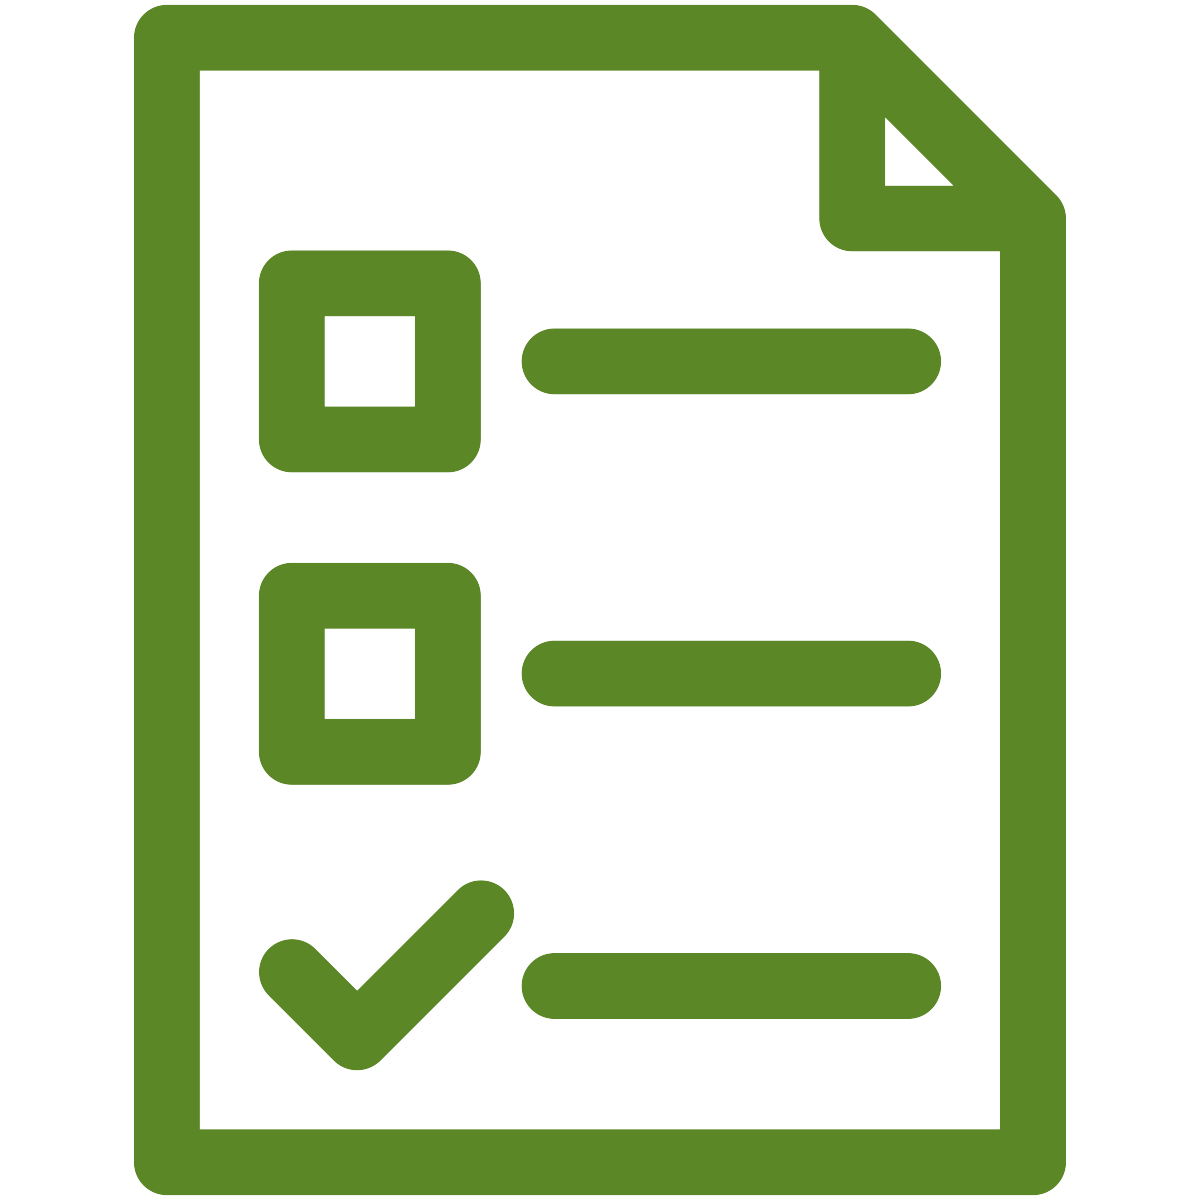 Green checklist icon